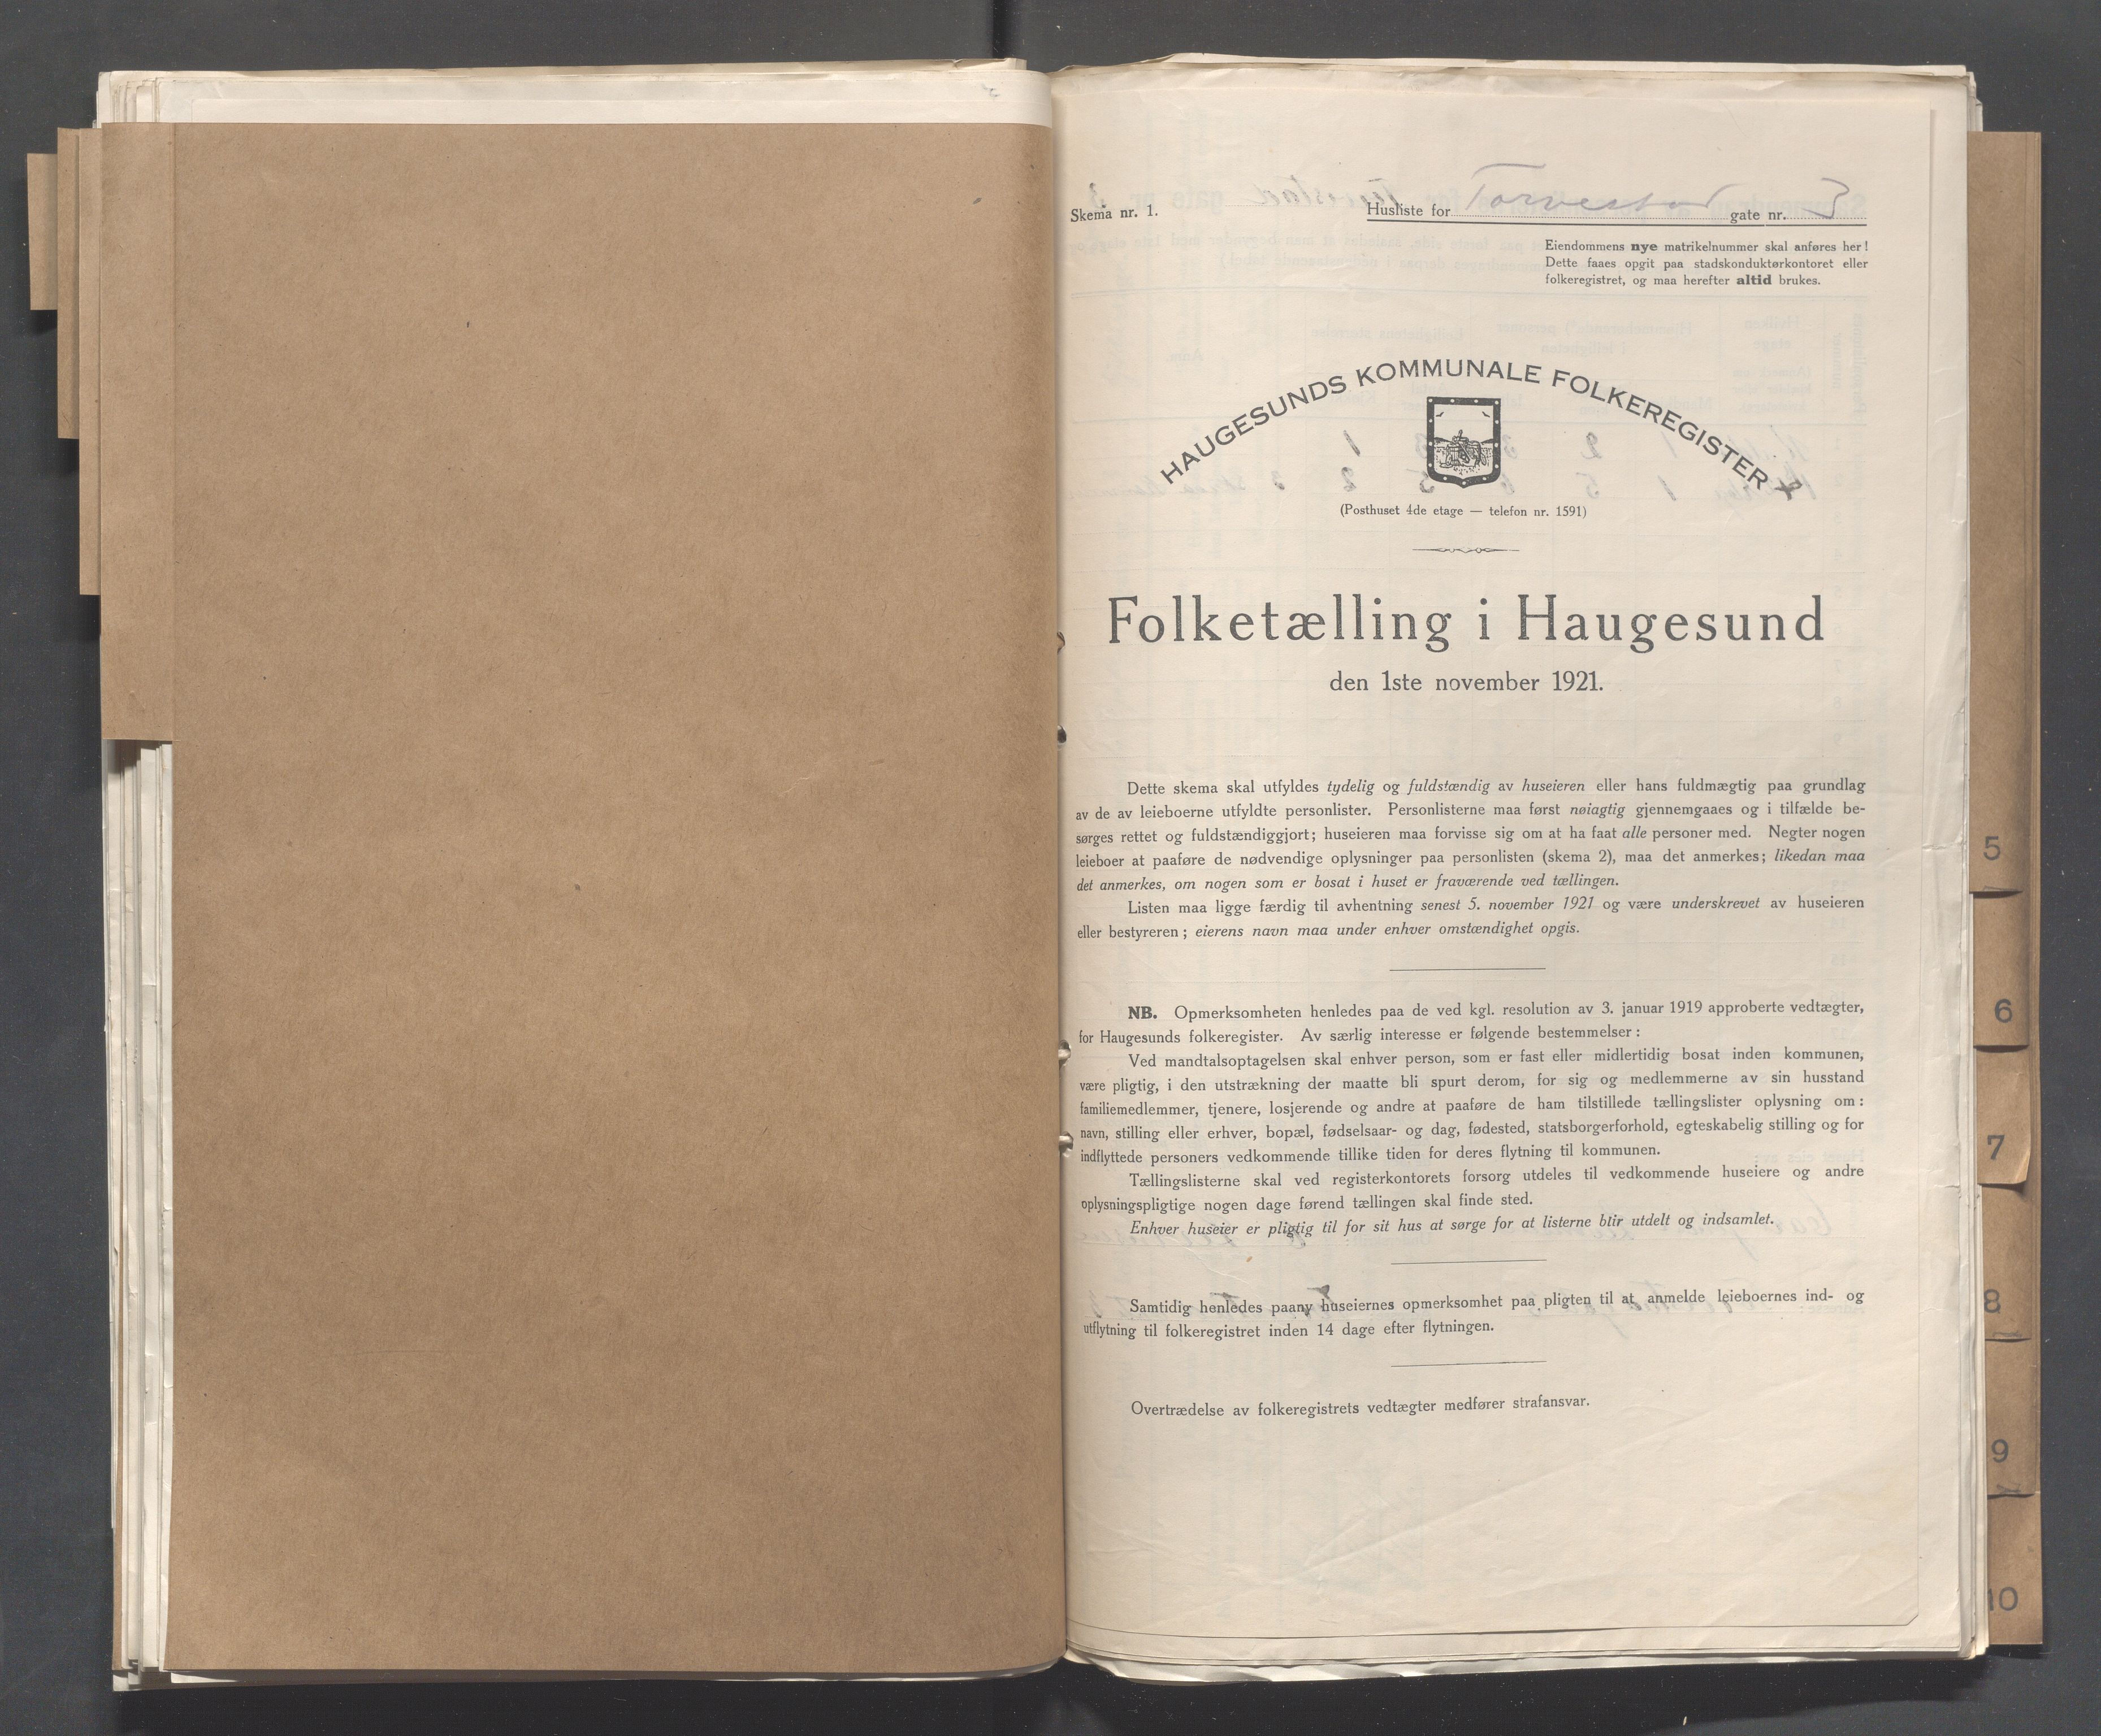 IKAR, Local census 1.11.1921 for Haugesund, 1921, p. 5465